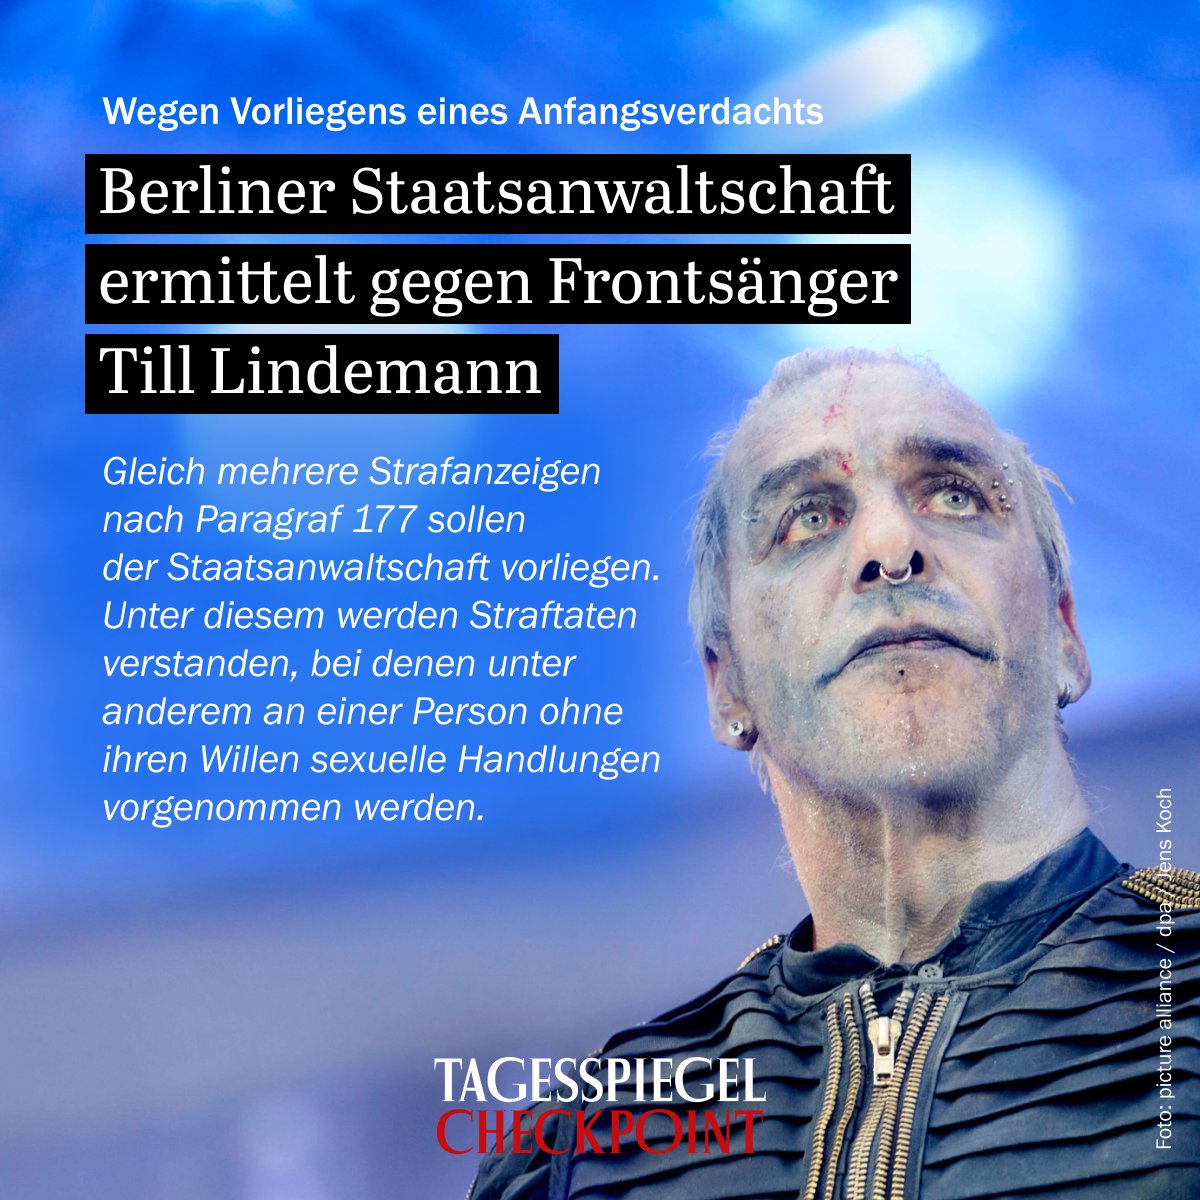 Gegen #TillLindemann wurden Ermittlungen eingeleitet. Es lägen gleich mehrere Strafanzeigen vor. #Rammstein tagesspiegel.de/berlin/vorwurf…